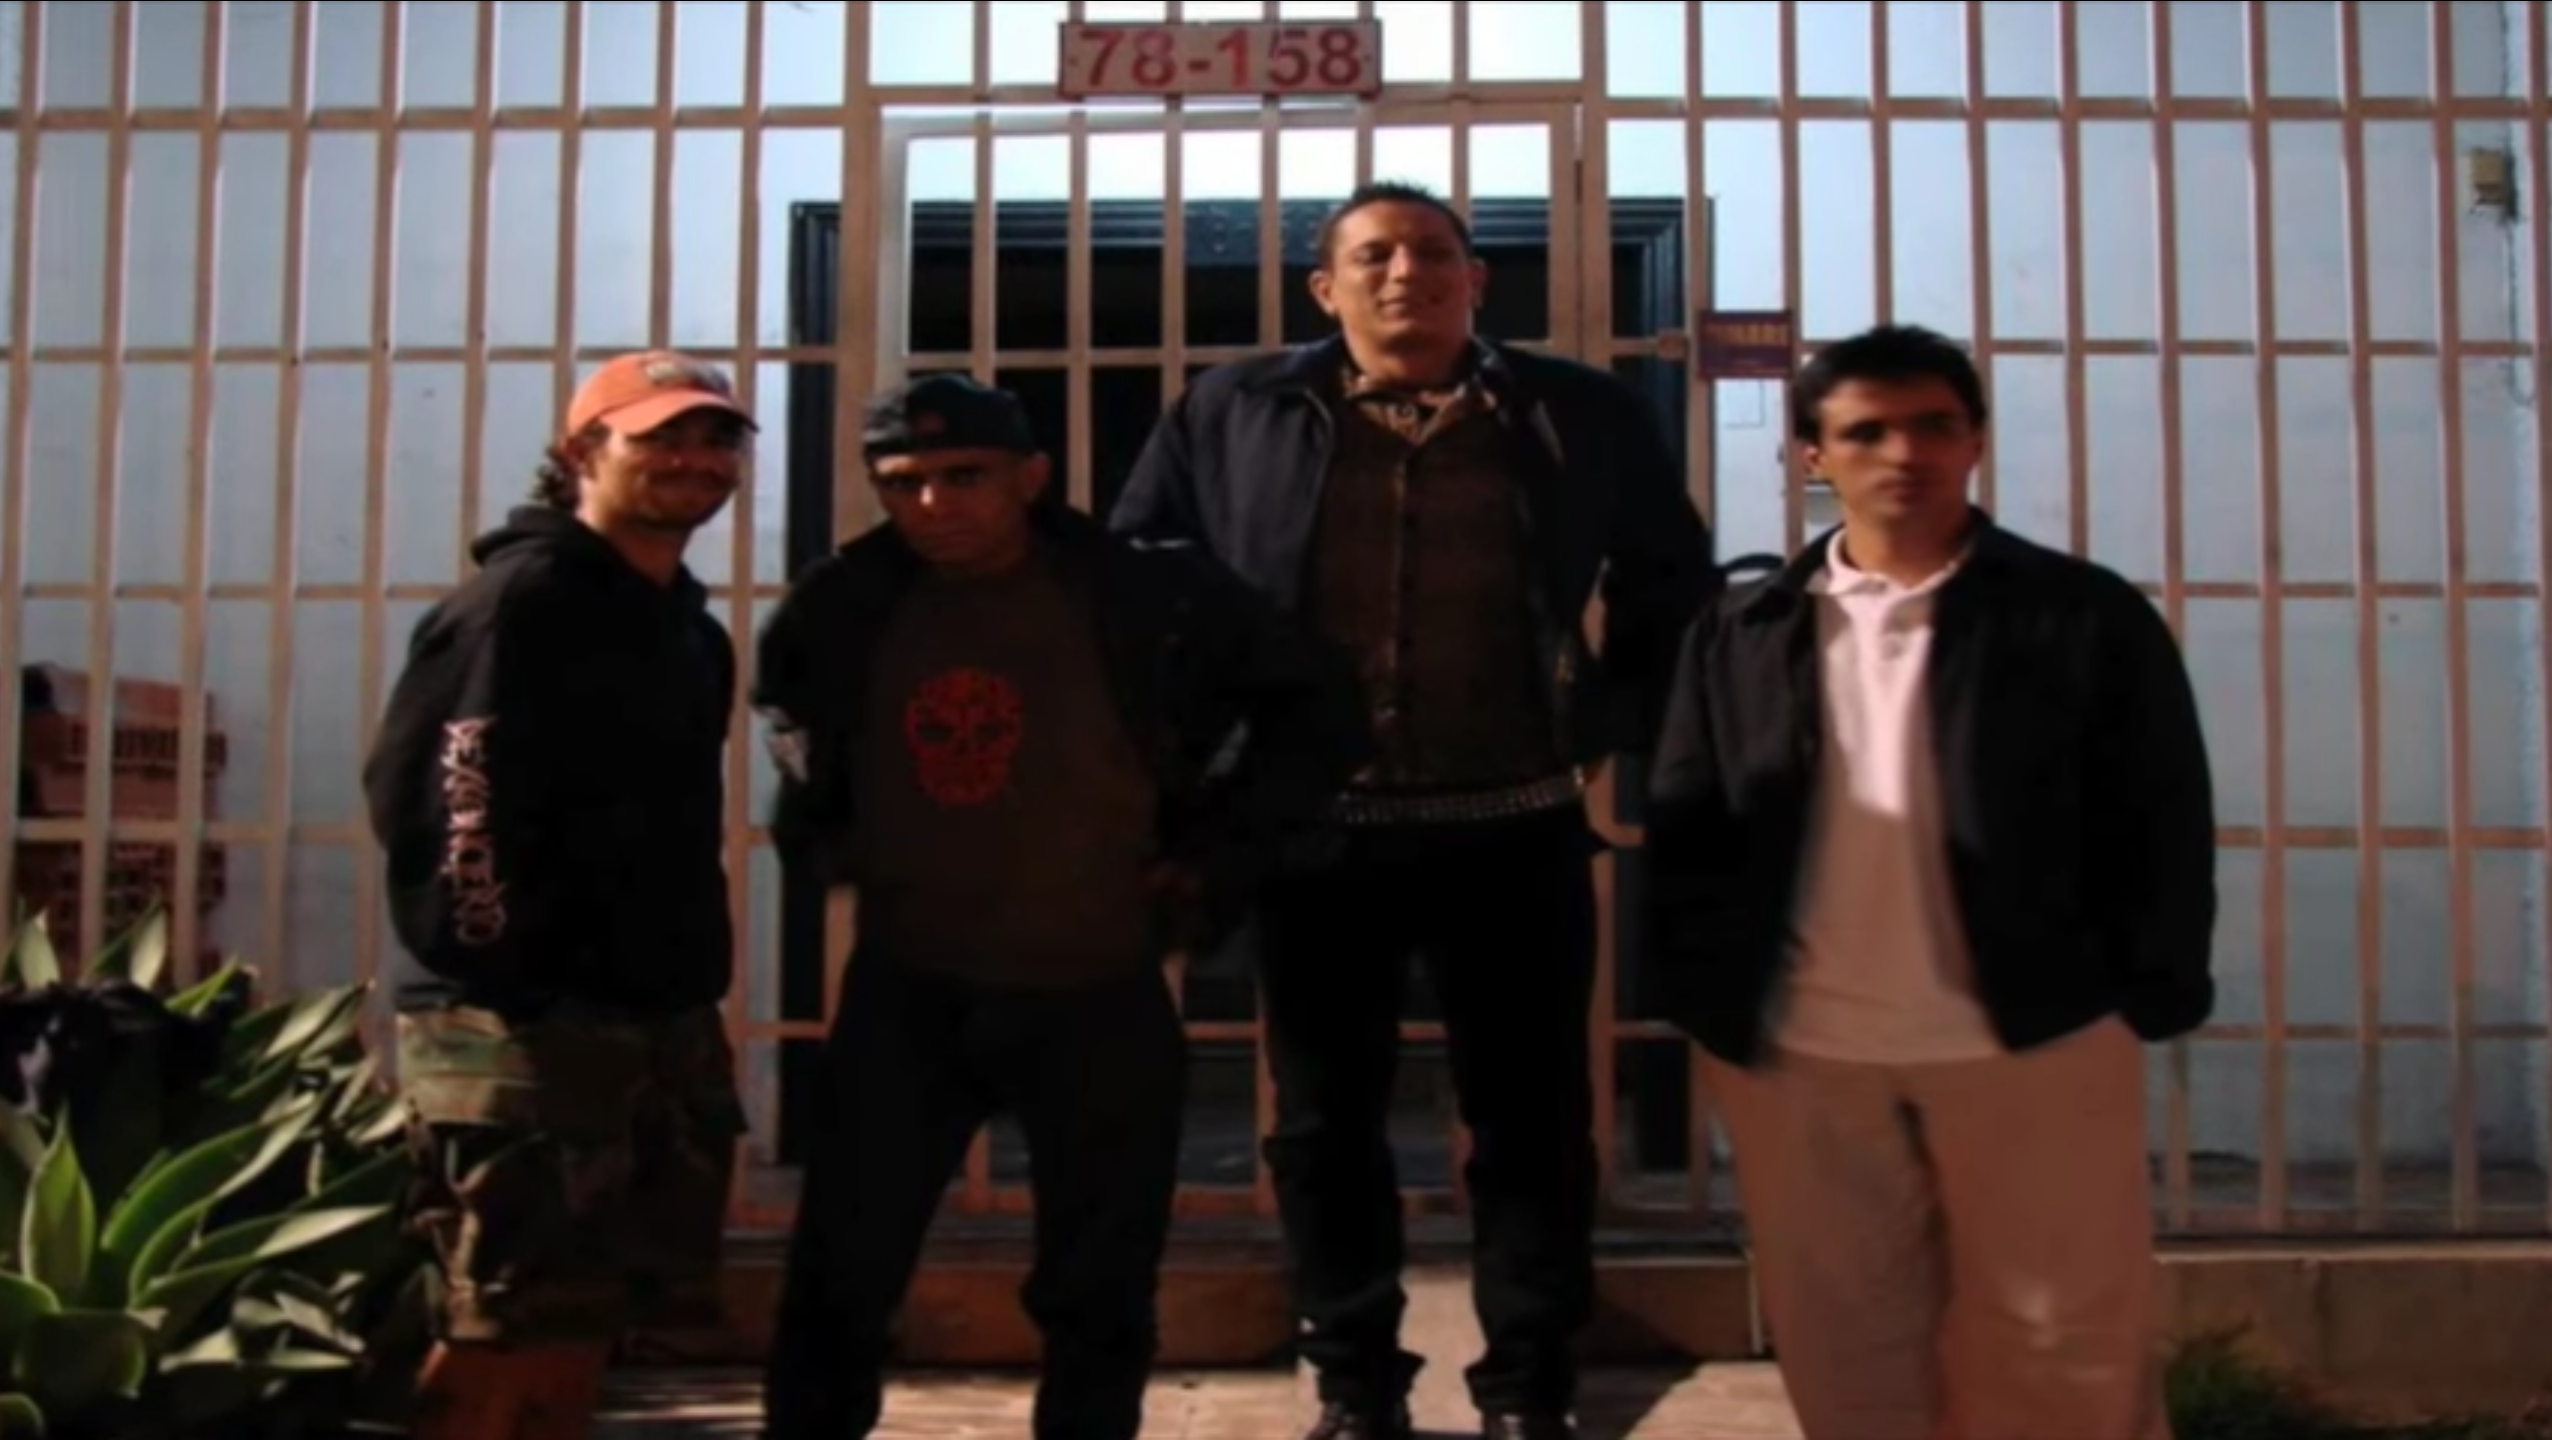 Dexkoncierto, banda de hardcore punk de Medellin, Colombia